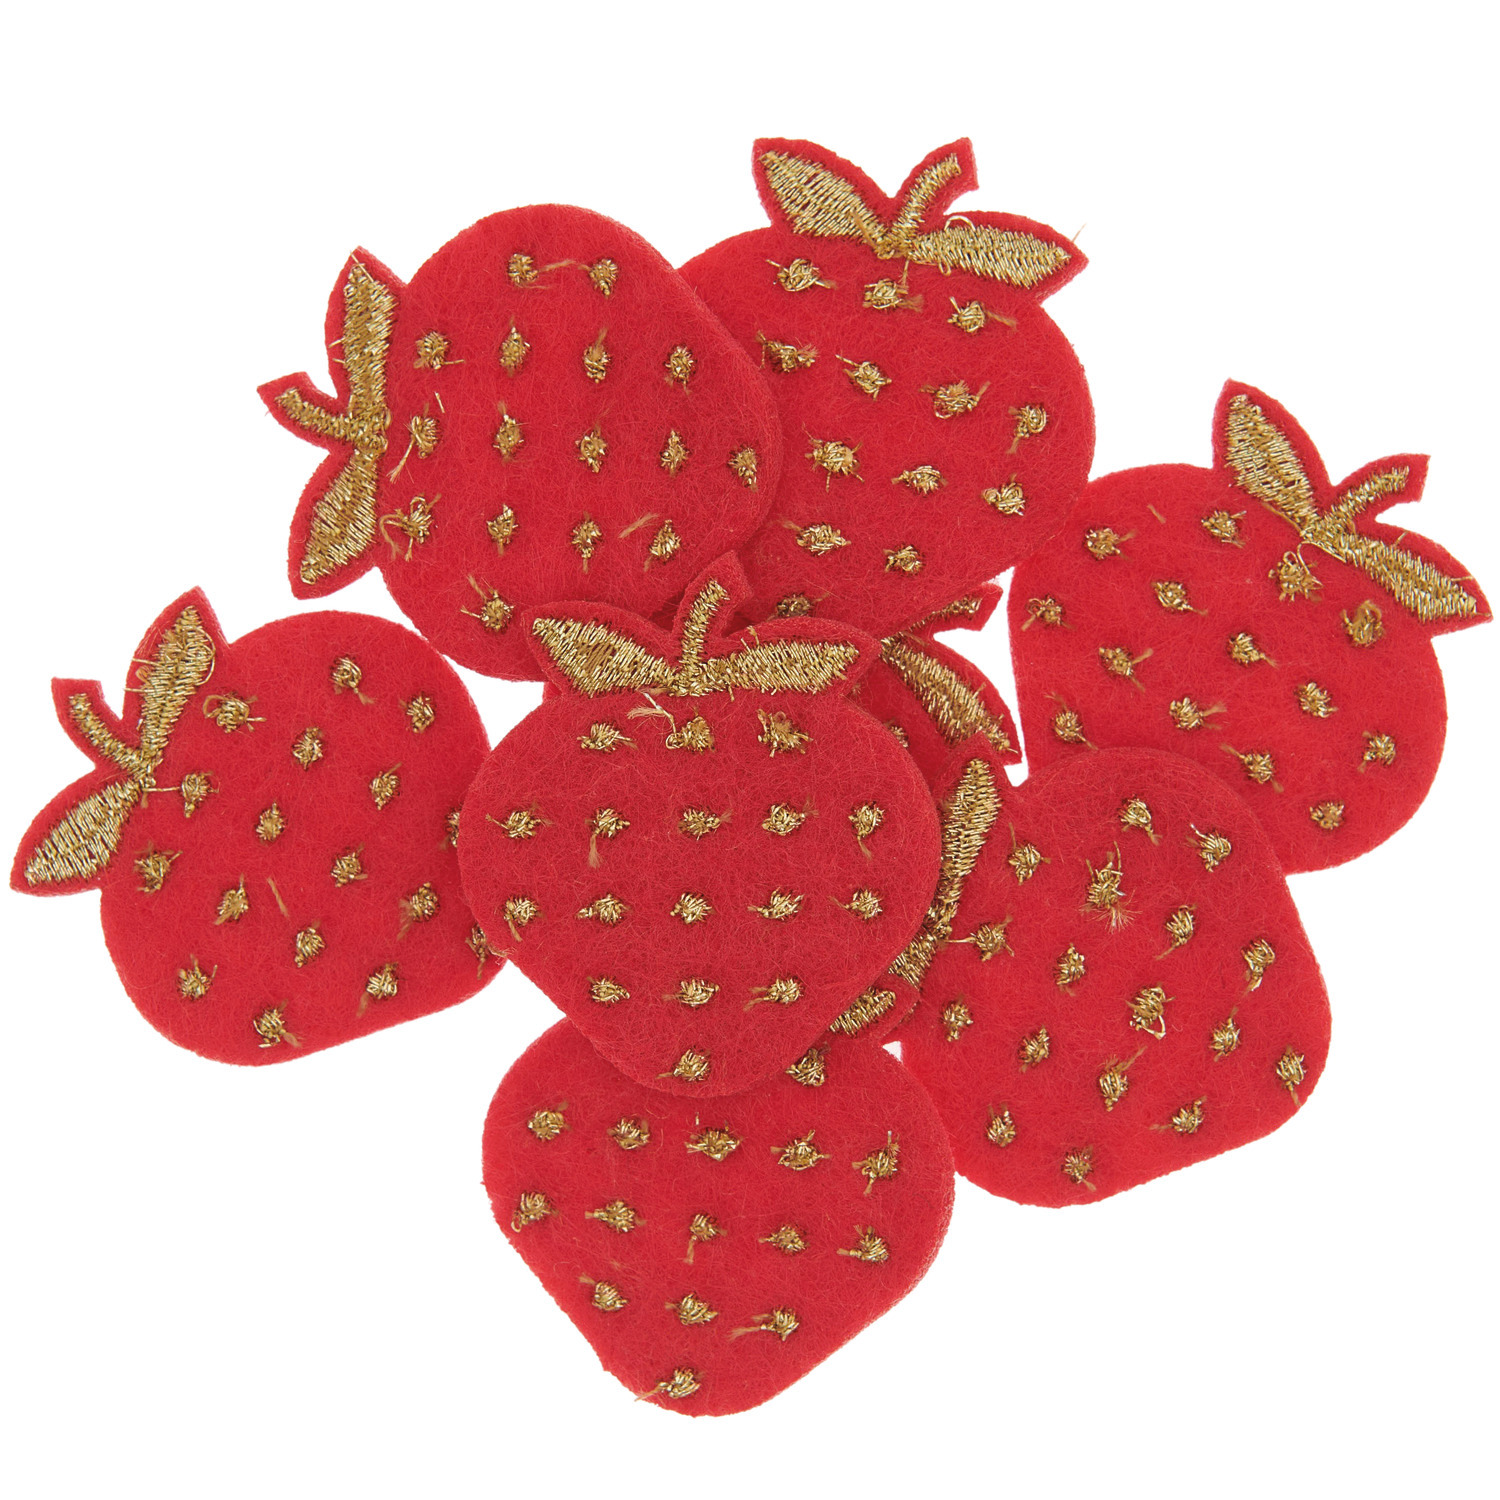 Filzstreu Erdbeeren bestickt Rot/Gold